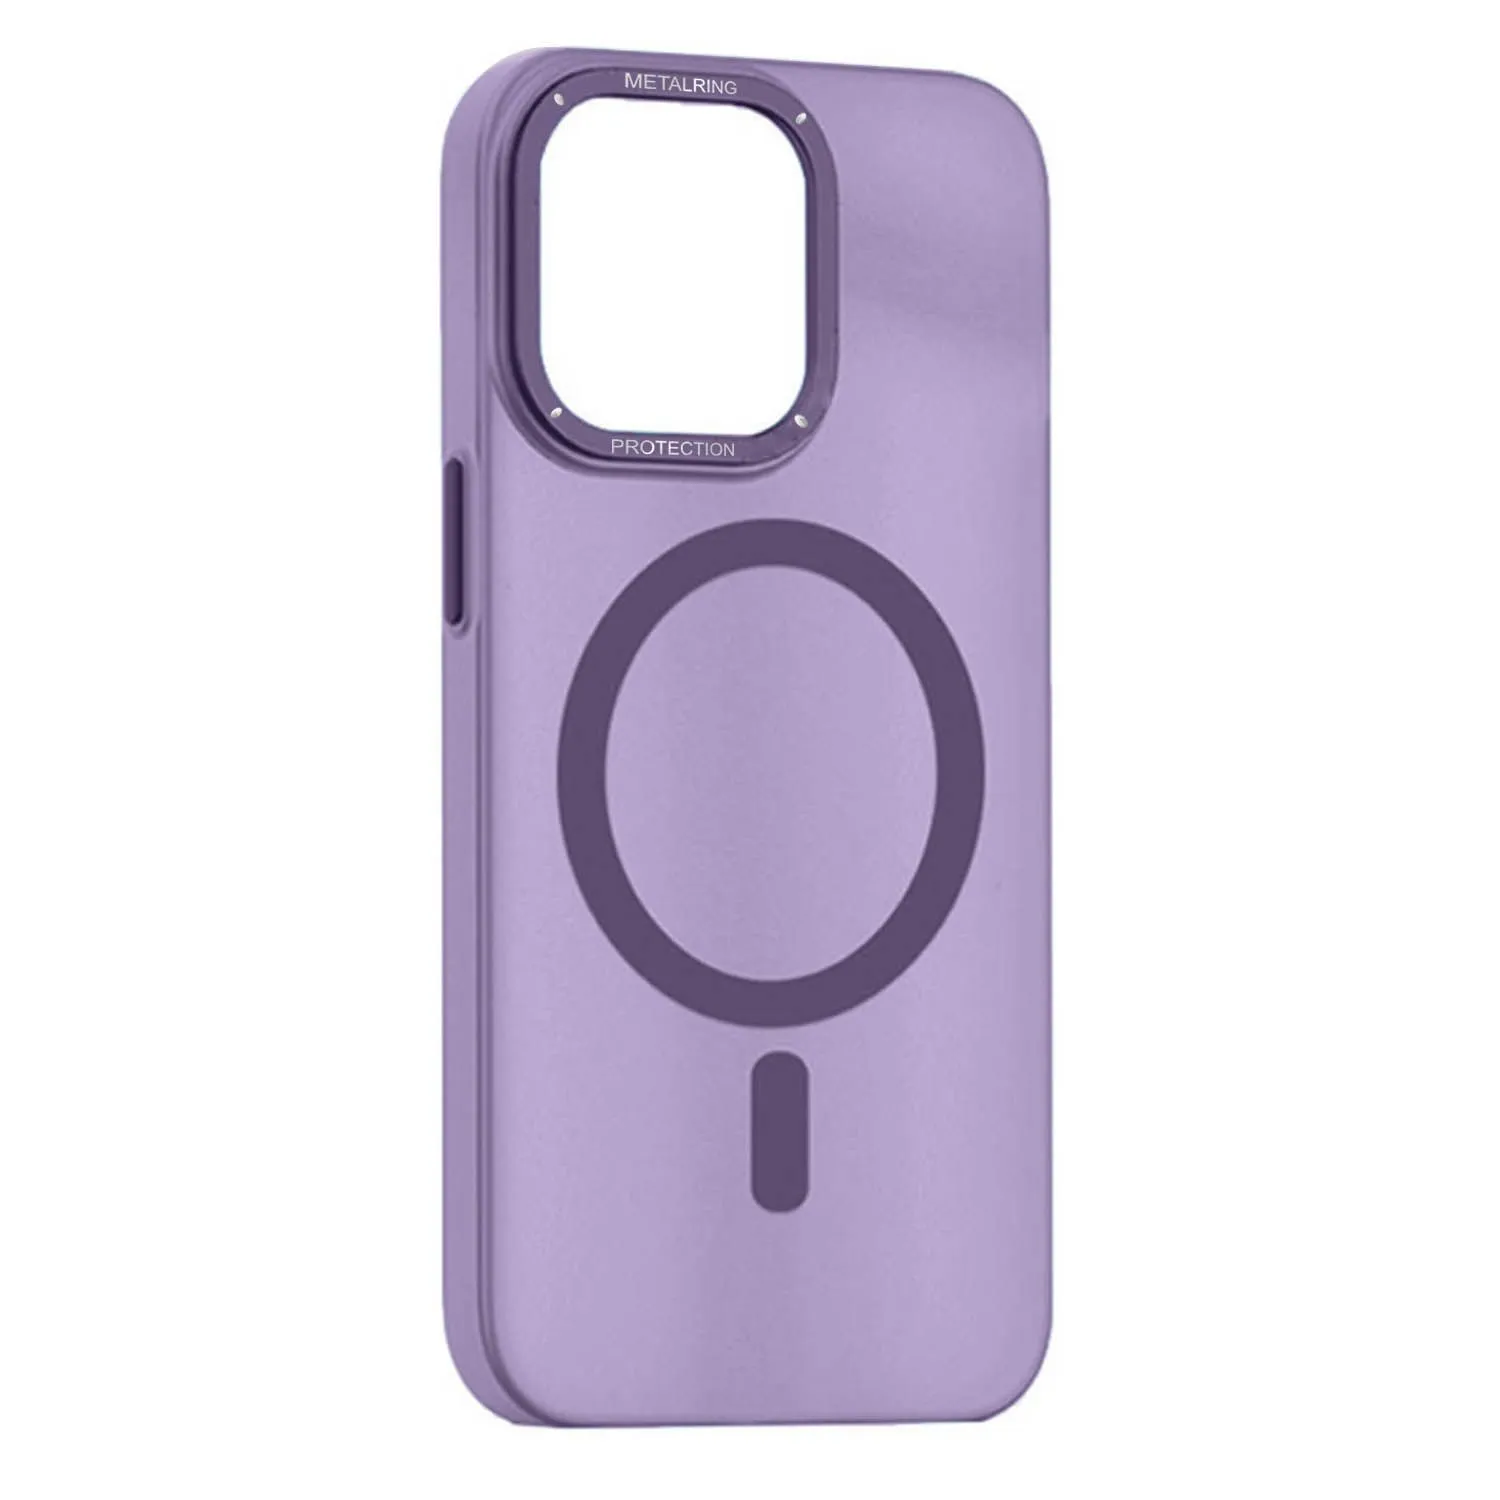 Матовый чехол Apple iPhone 12, Apple iPhone 12 Pro с металлической окантовкой с MagSafe (фиолетовый)